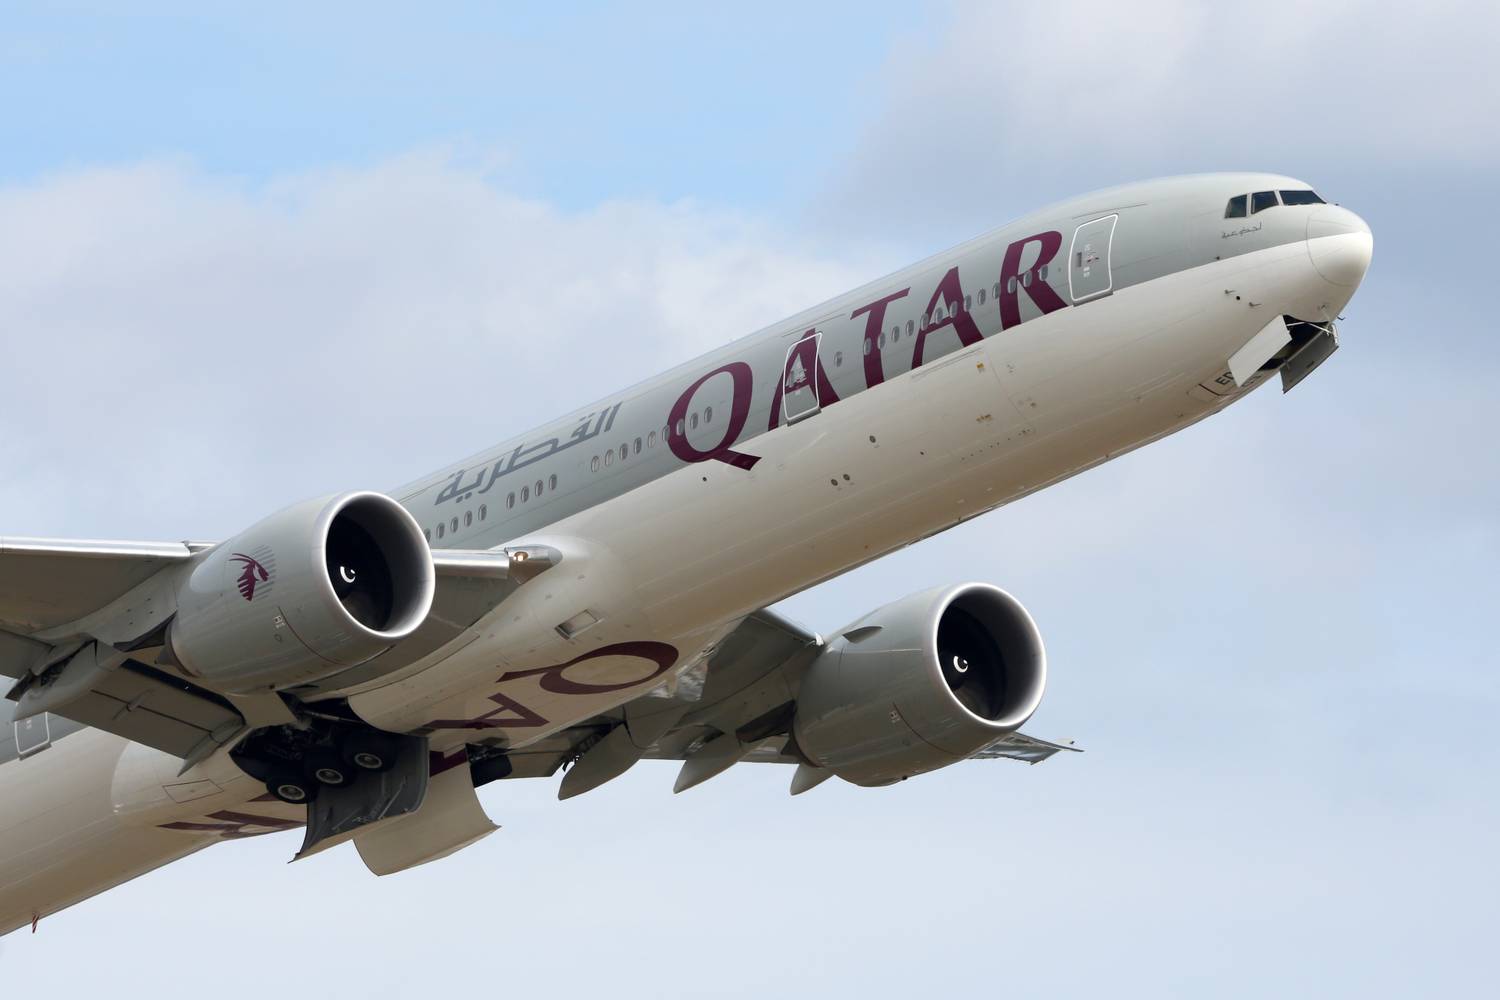 Qatar Airways 777-300ER